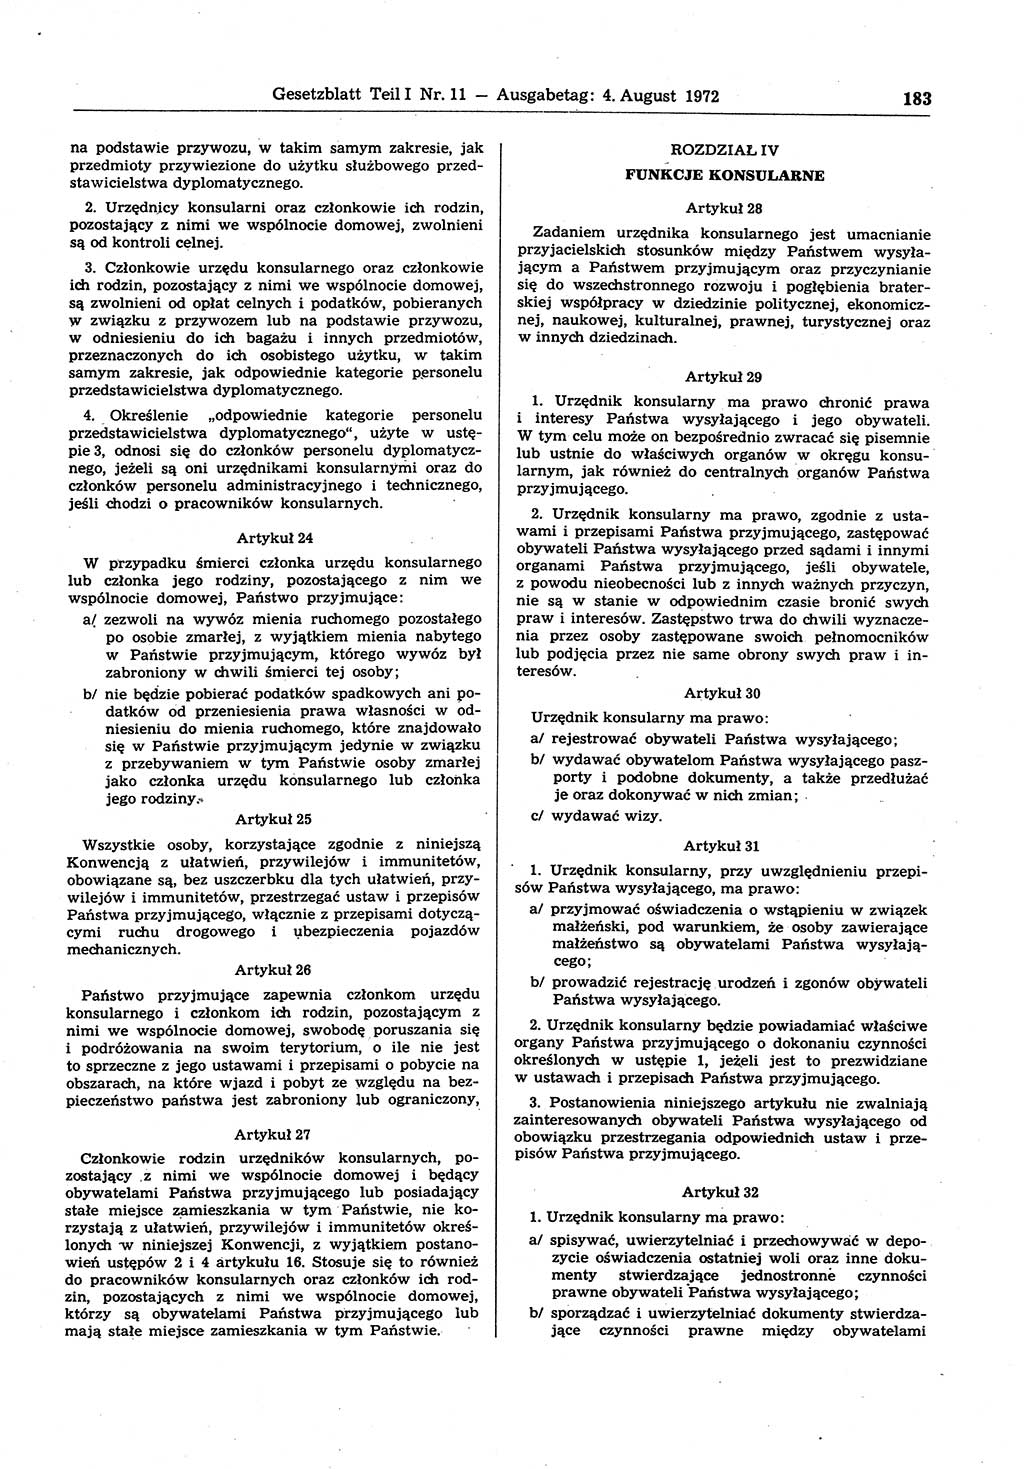 Gesetzblatt (GBl.) der Deutschen Demokratischen Republik (DDR) Teil Ⅰ 1972, Seite 183 (GBl. DDR Ⅰ 1972, S. 183)